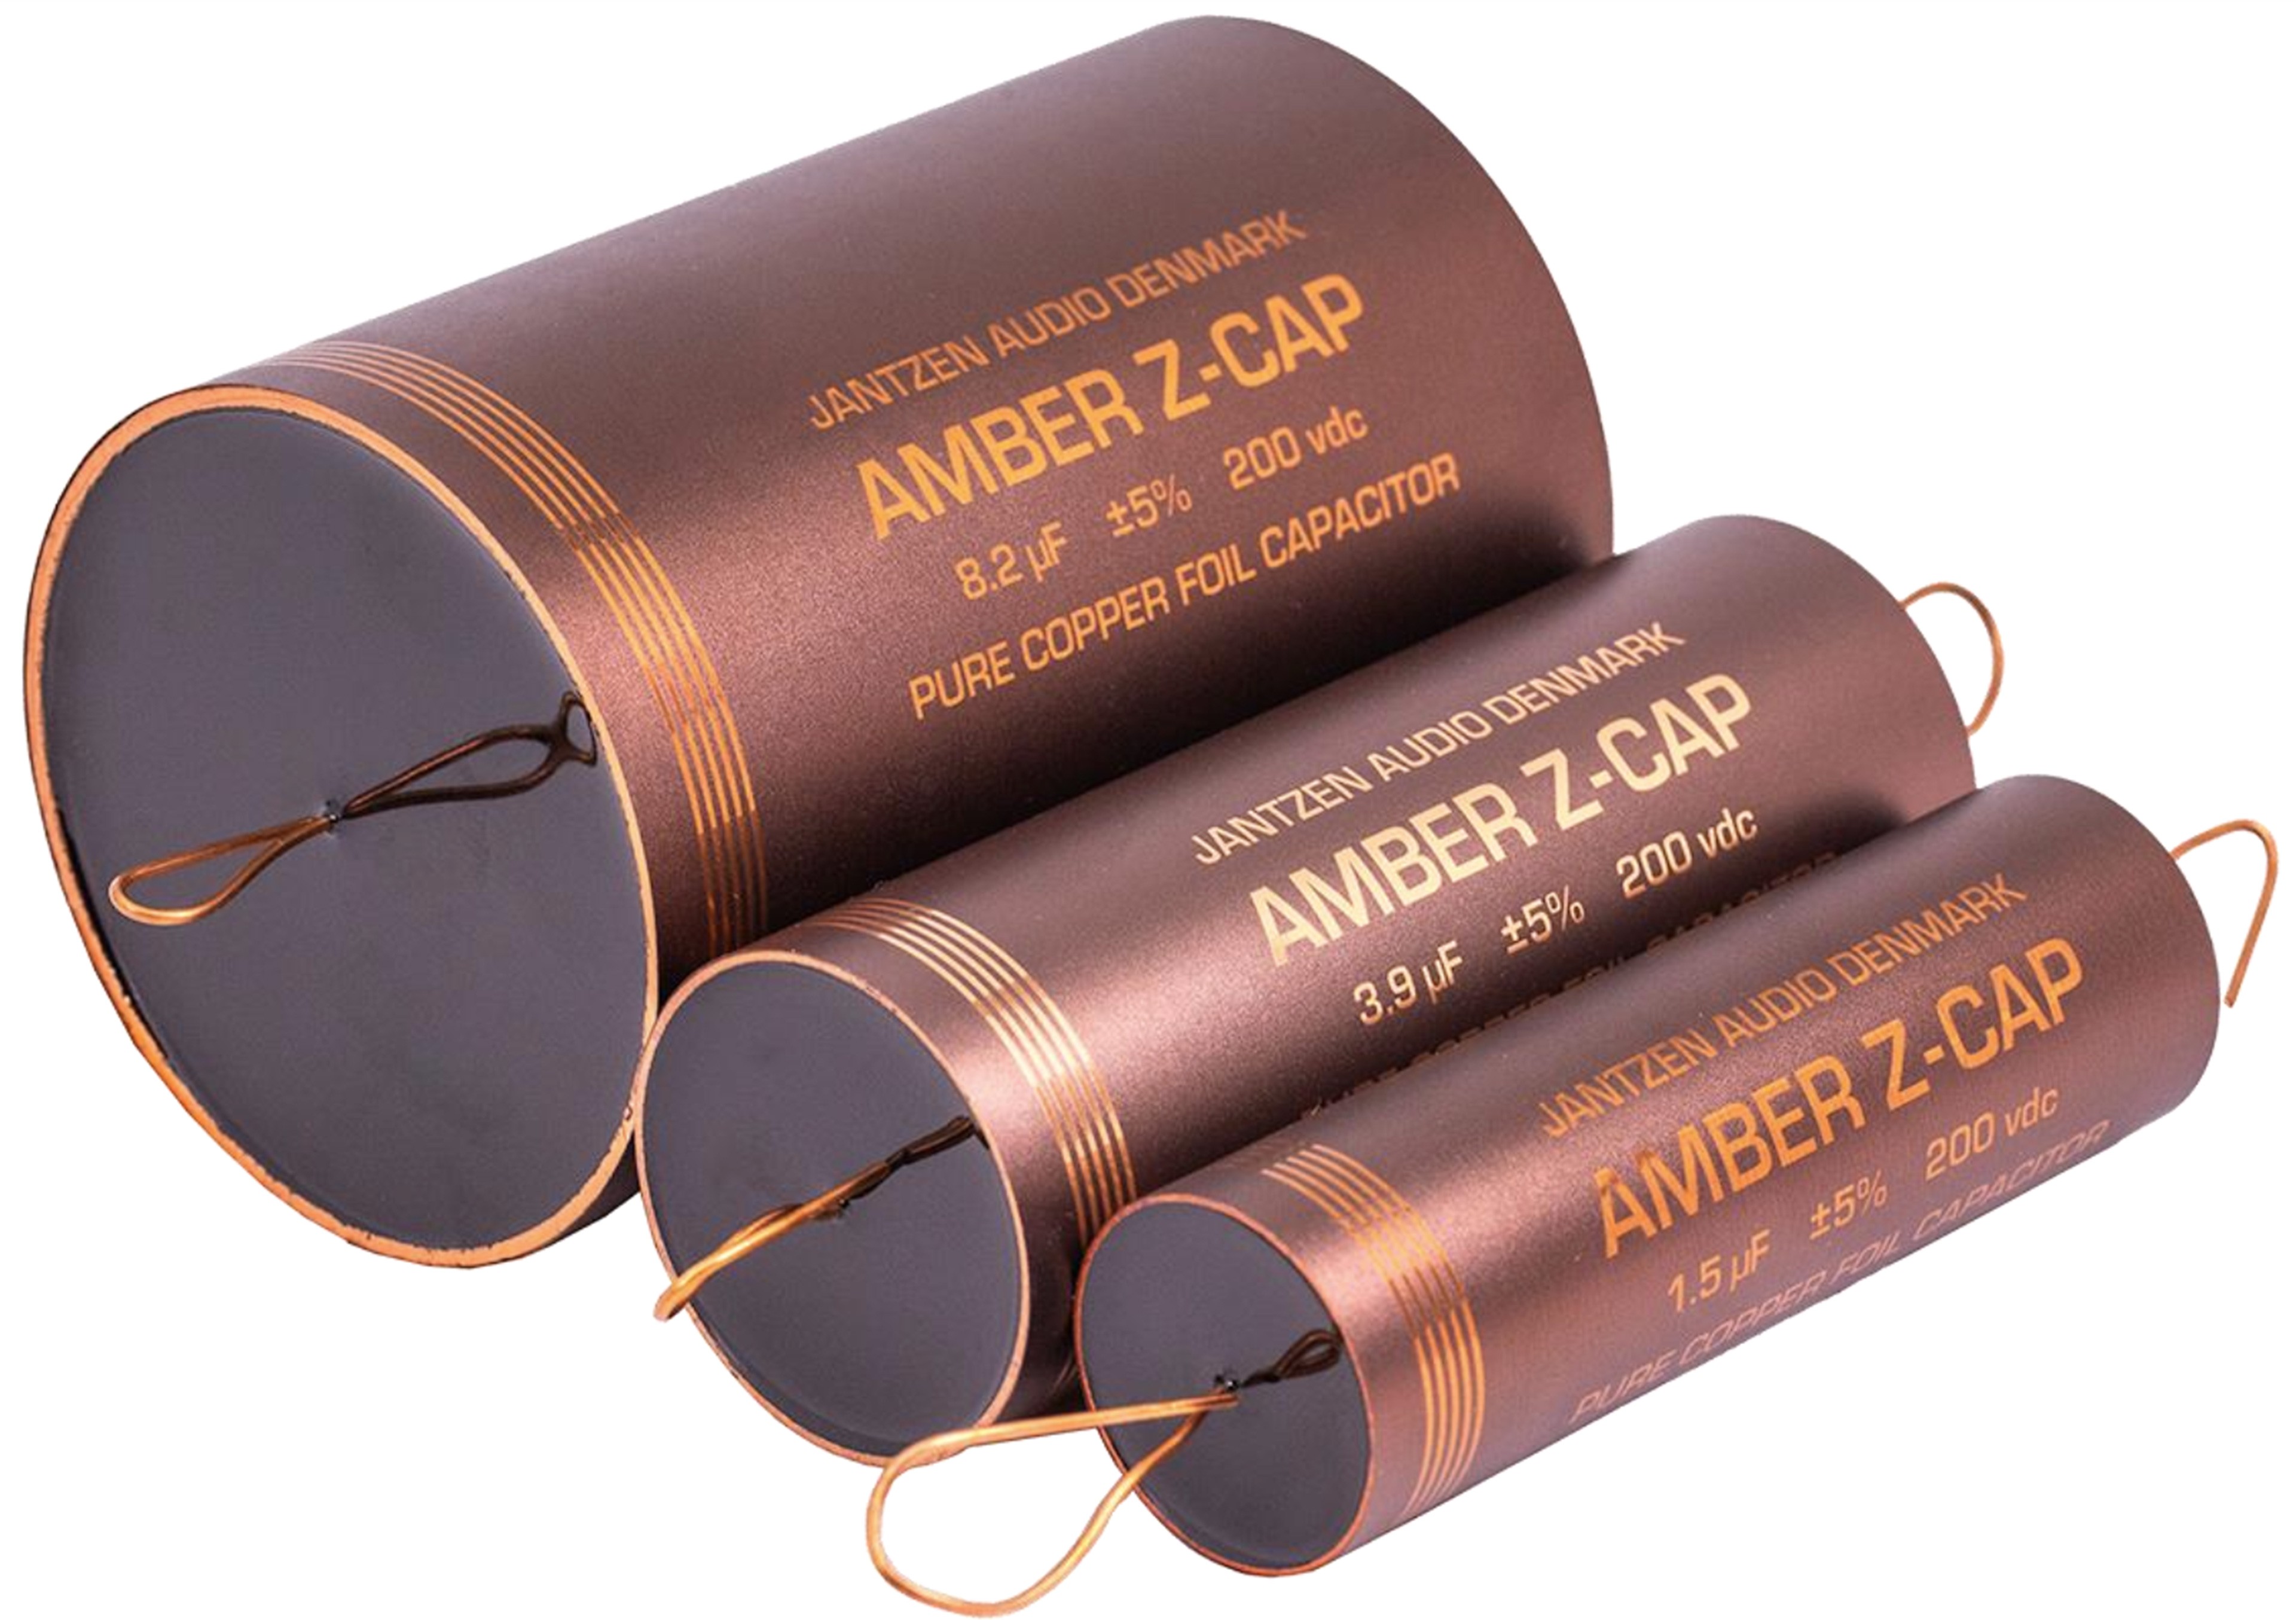 JANTZEN AUDIO AMBER Z-CAP 001-7253 Pure Copper Foil Capacitor Axial 200V 8.2µF